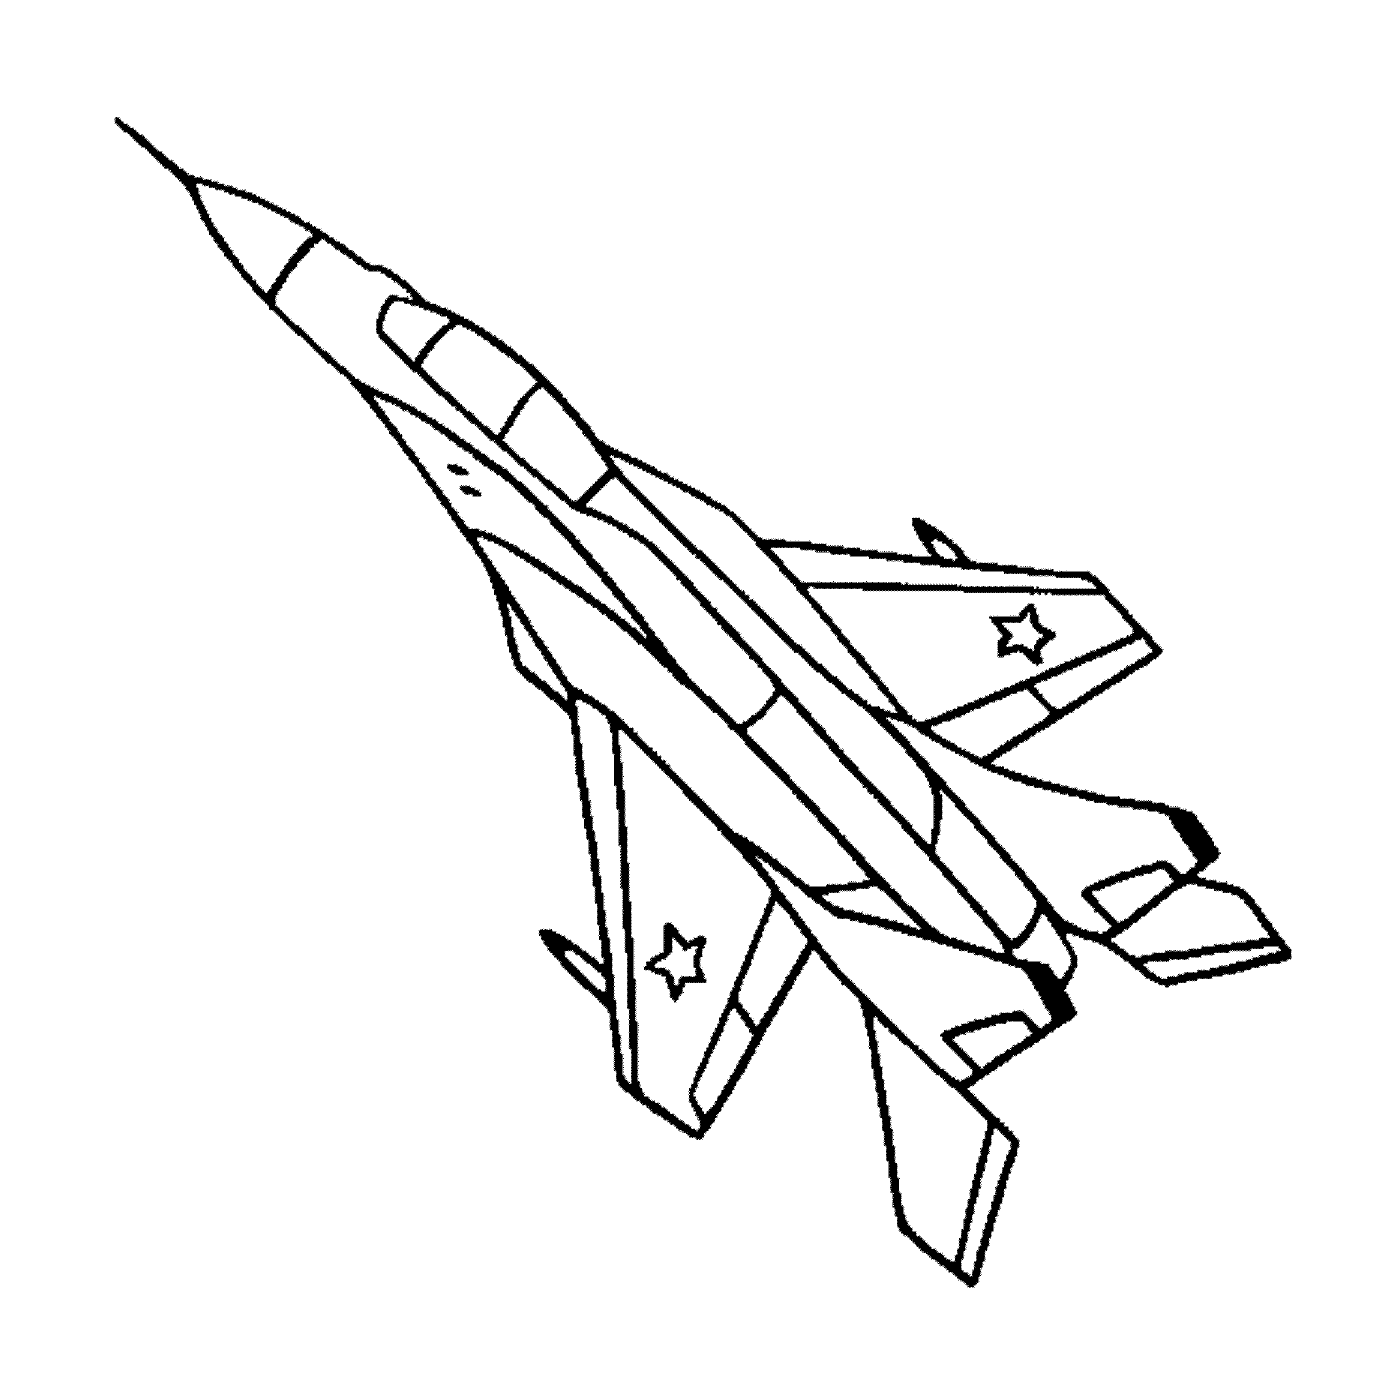   Un avion de chasse vole dans les airs 